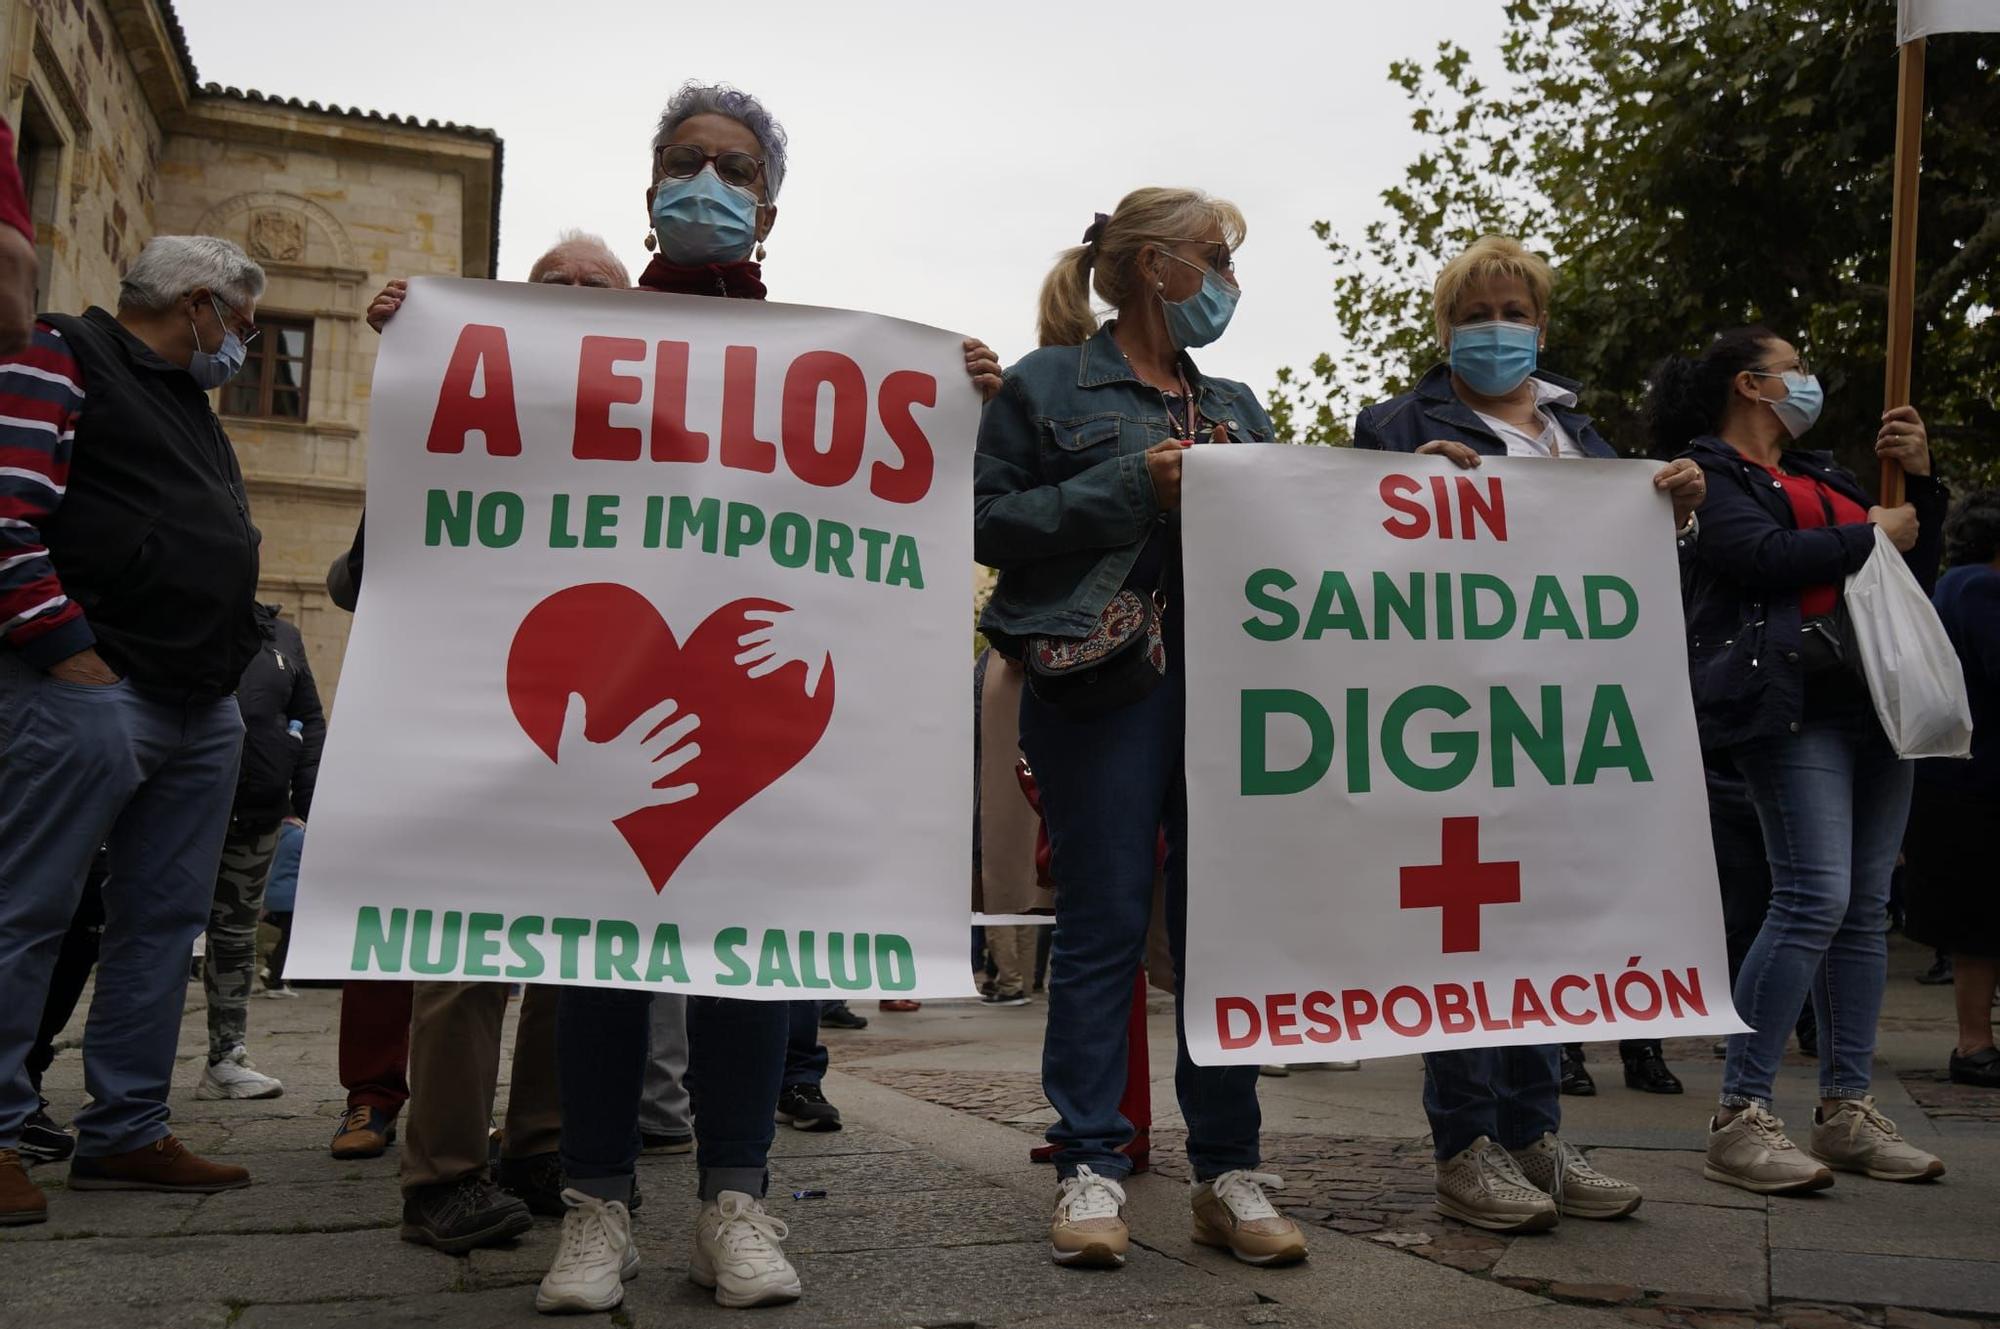 GALERÍA | La manifestación por una sanidad digna en Zamora, en imágenes